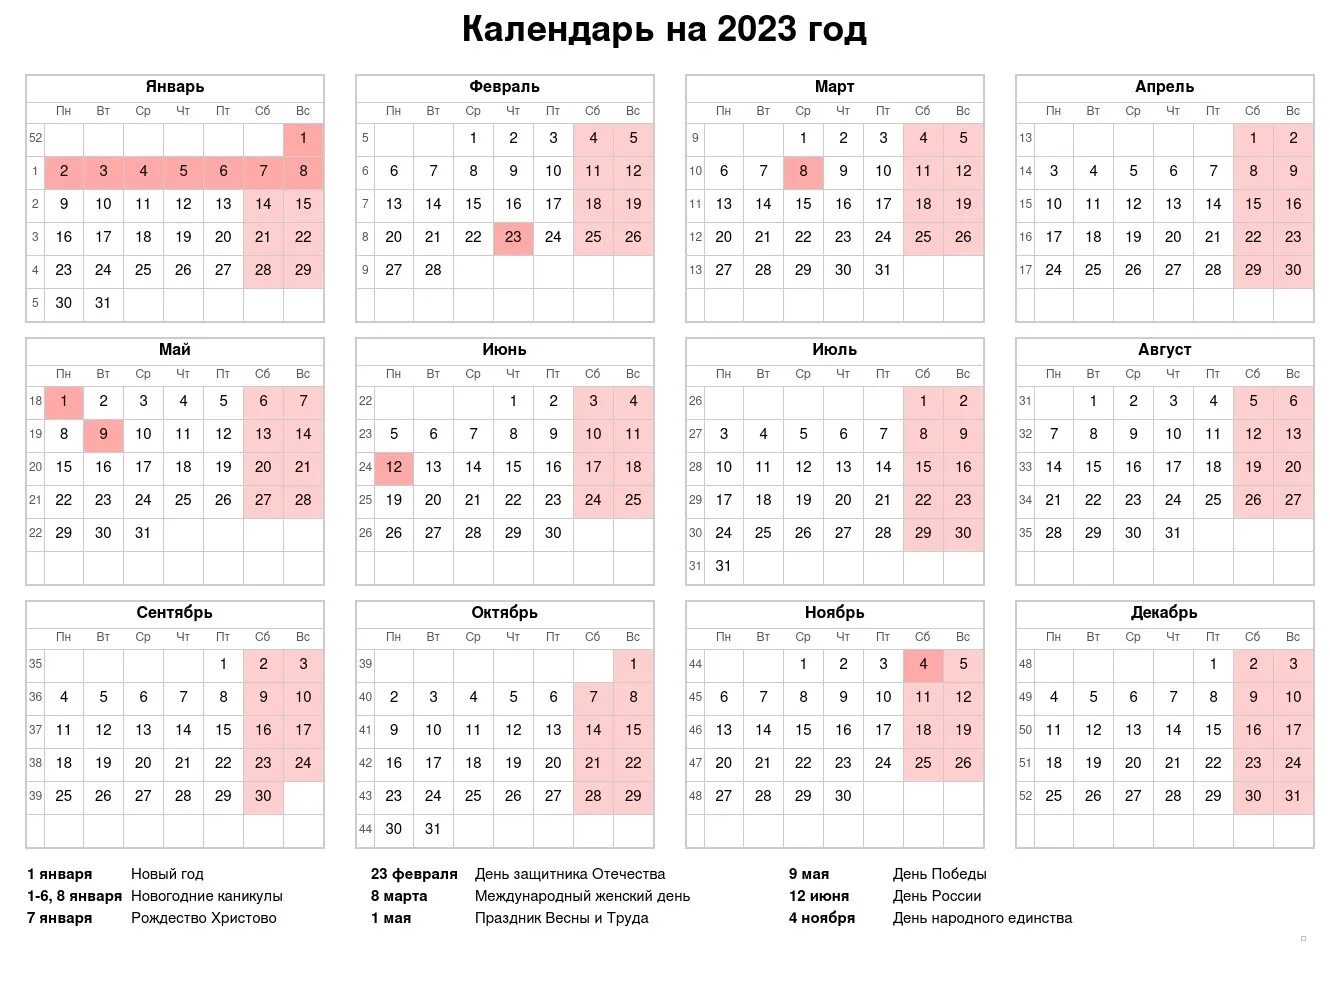 Производственный календарь на 2022 год с праздниками и выходными. Выходные и праздники 2022 года в России нерабочие дни. Календарь выходных и праздничных дней на 2022 год в России. Праздничные и выходные дни в 2022 году в России Министерство труда. 15 рабочих дней в календарные